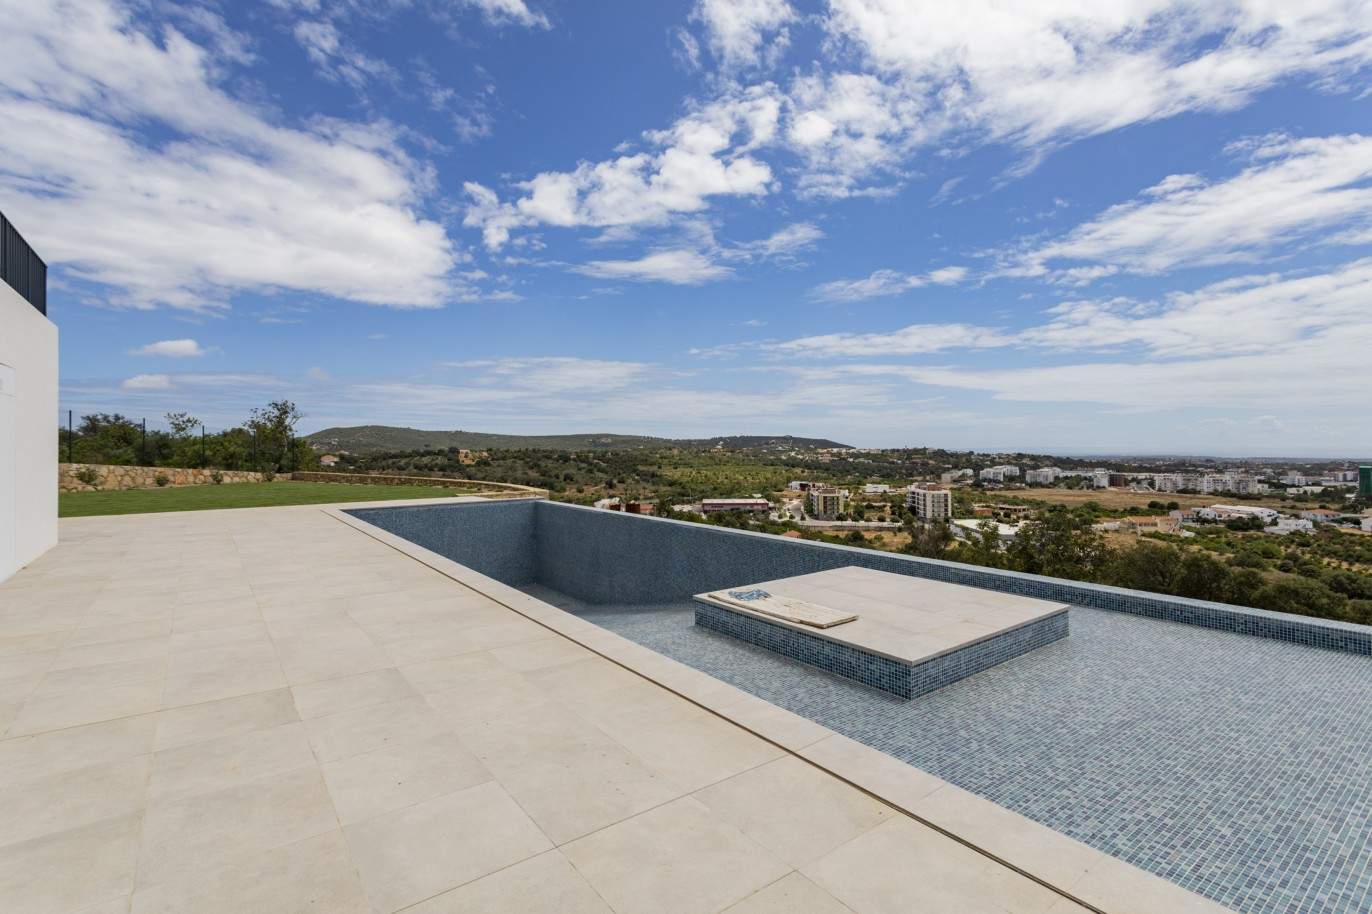 Moradia T4 com piscina, para venda em S.Clemente, Loulé, Algarve_201810